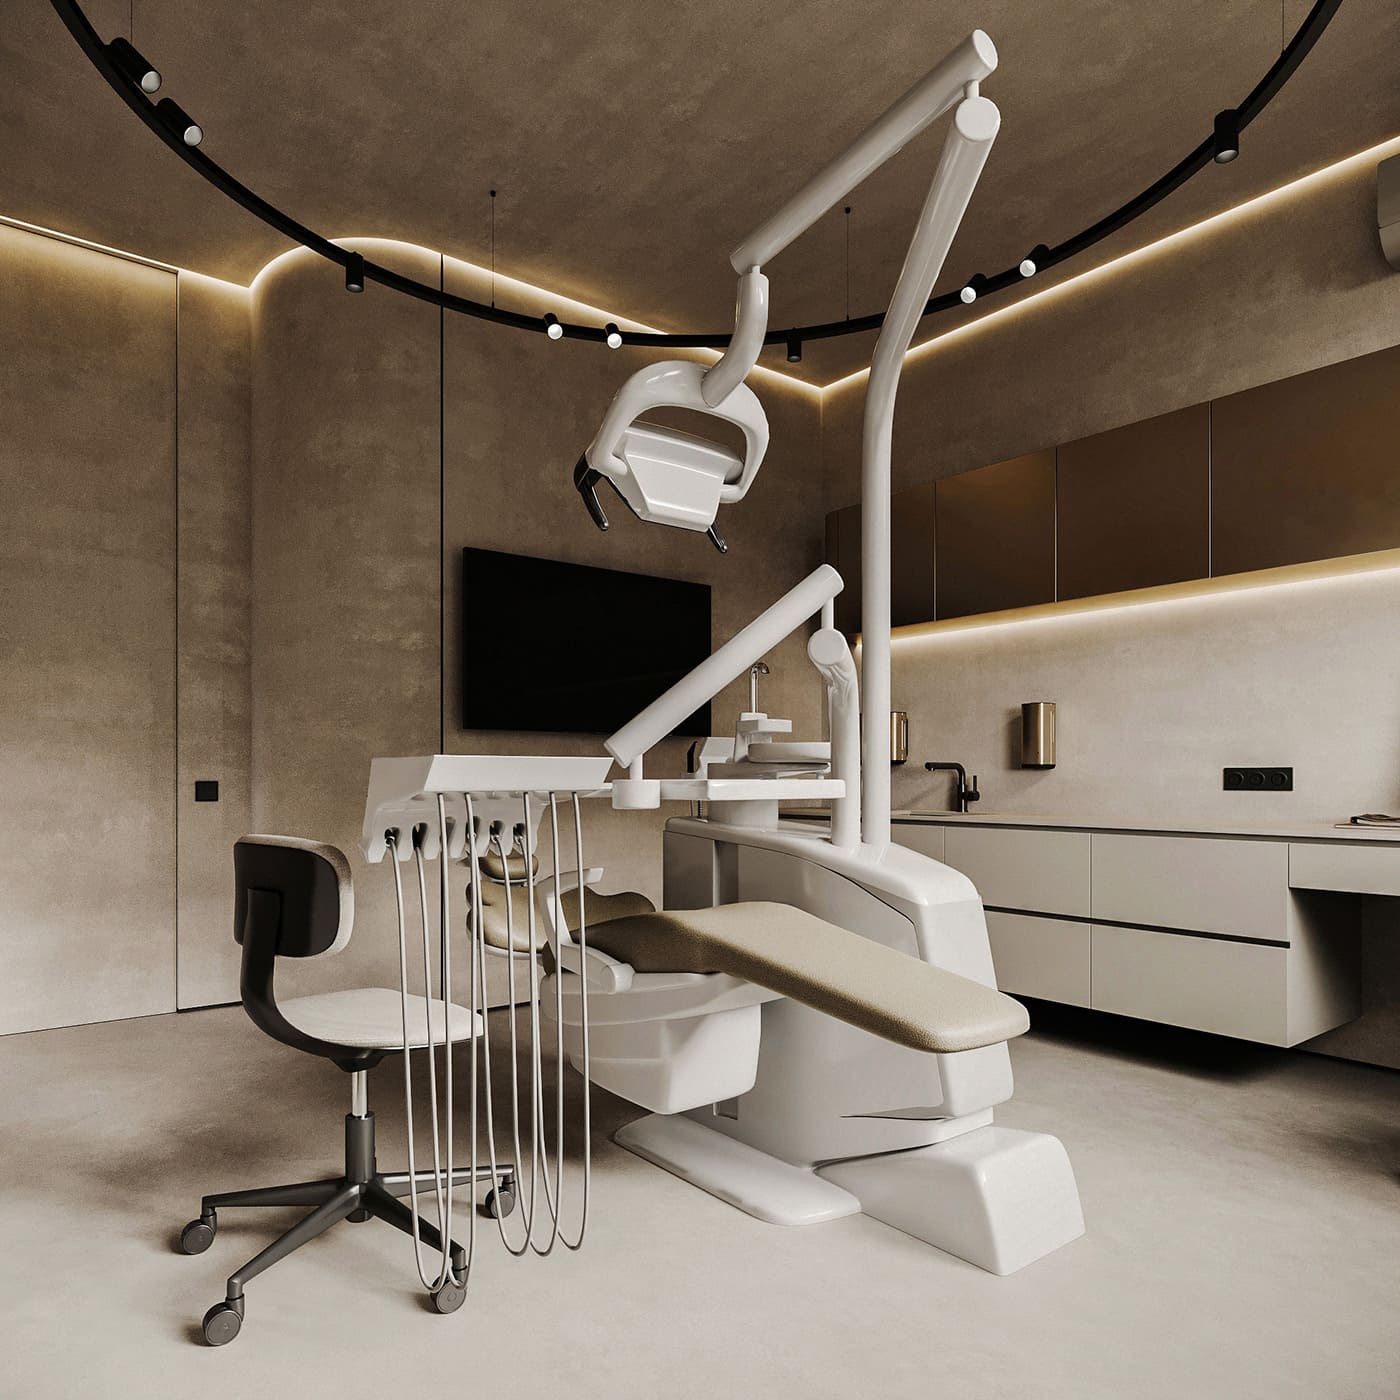 Стоматологическая клиника, кабинет, фото 17